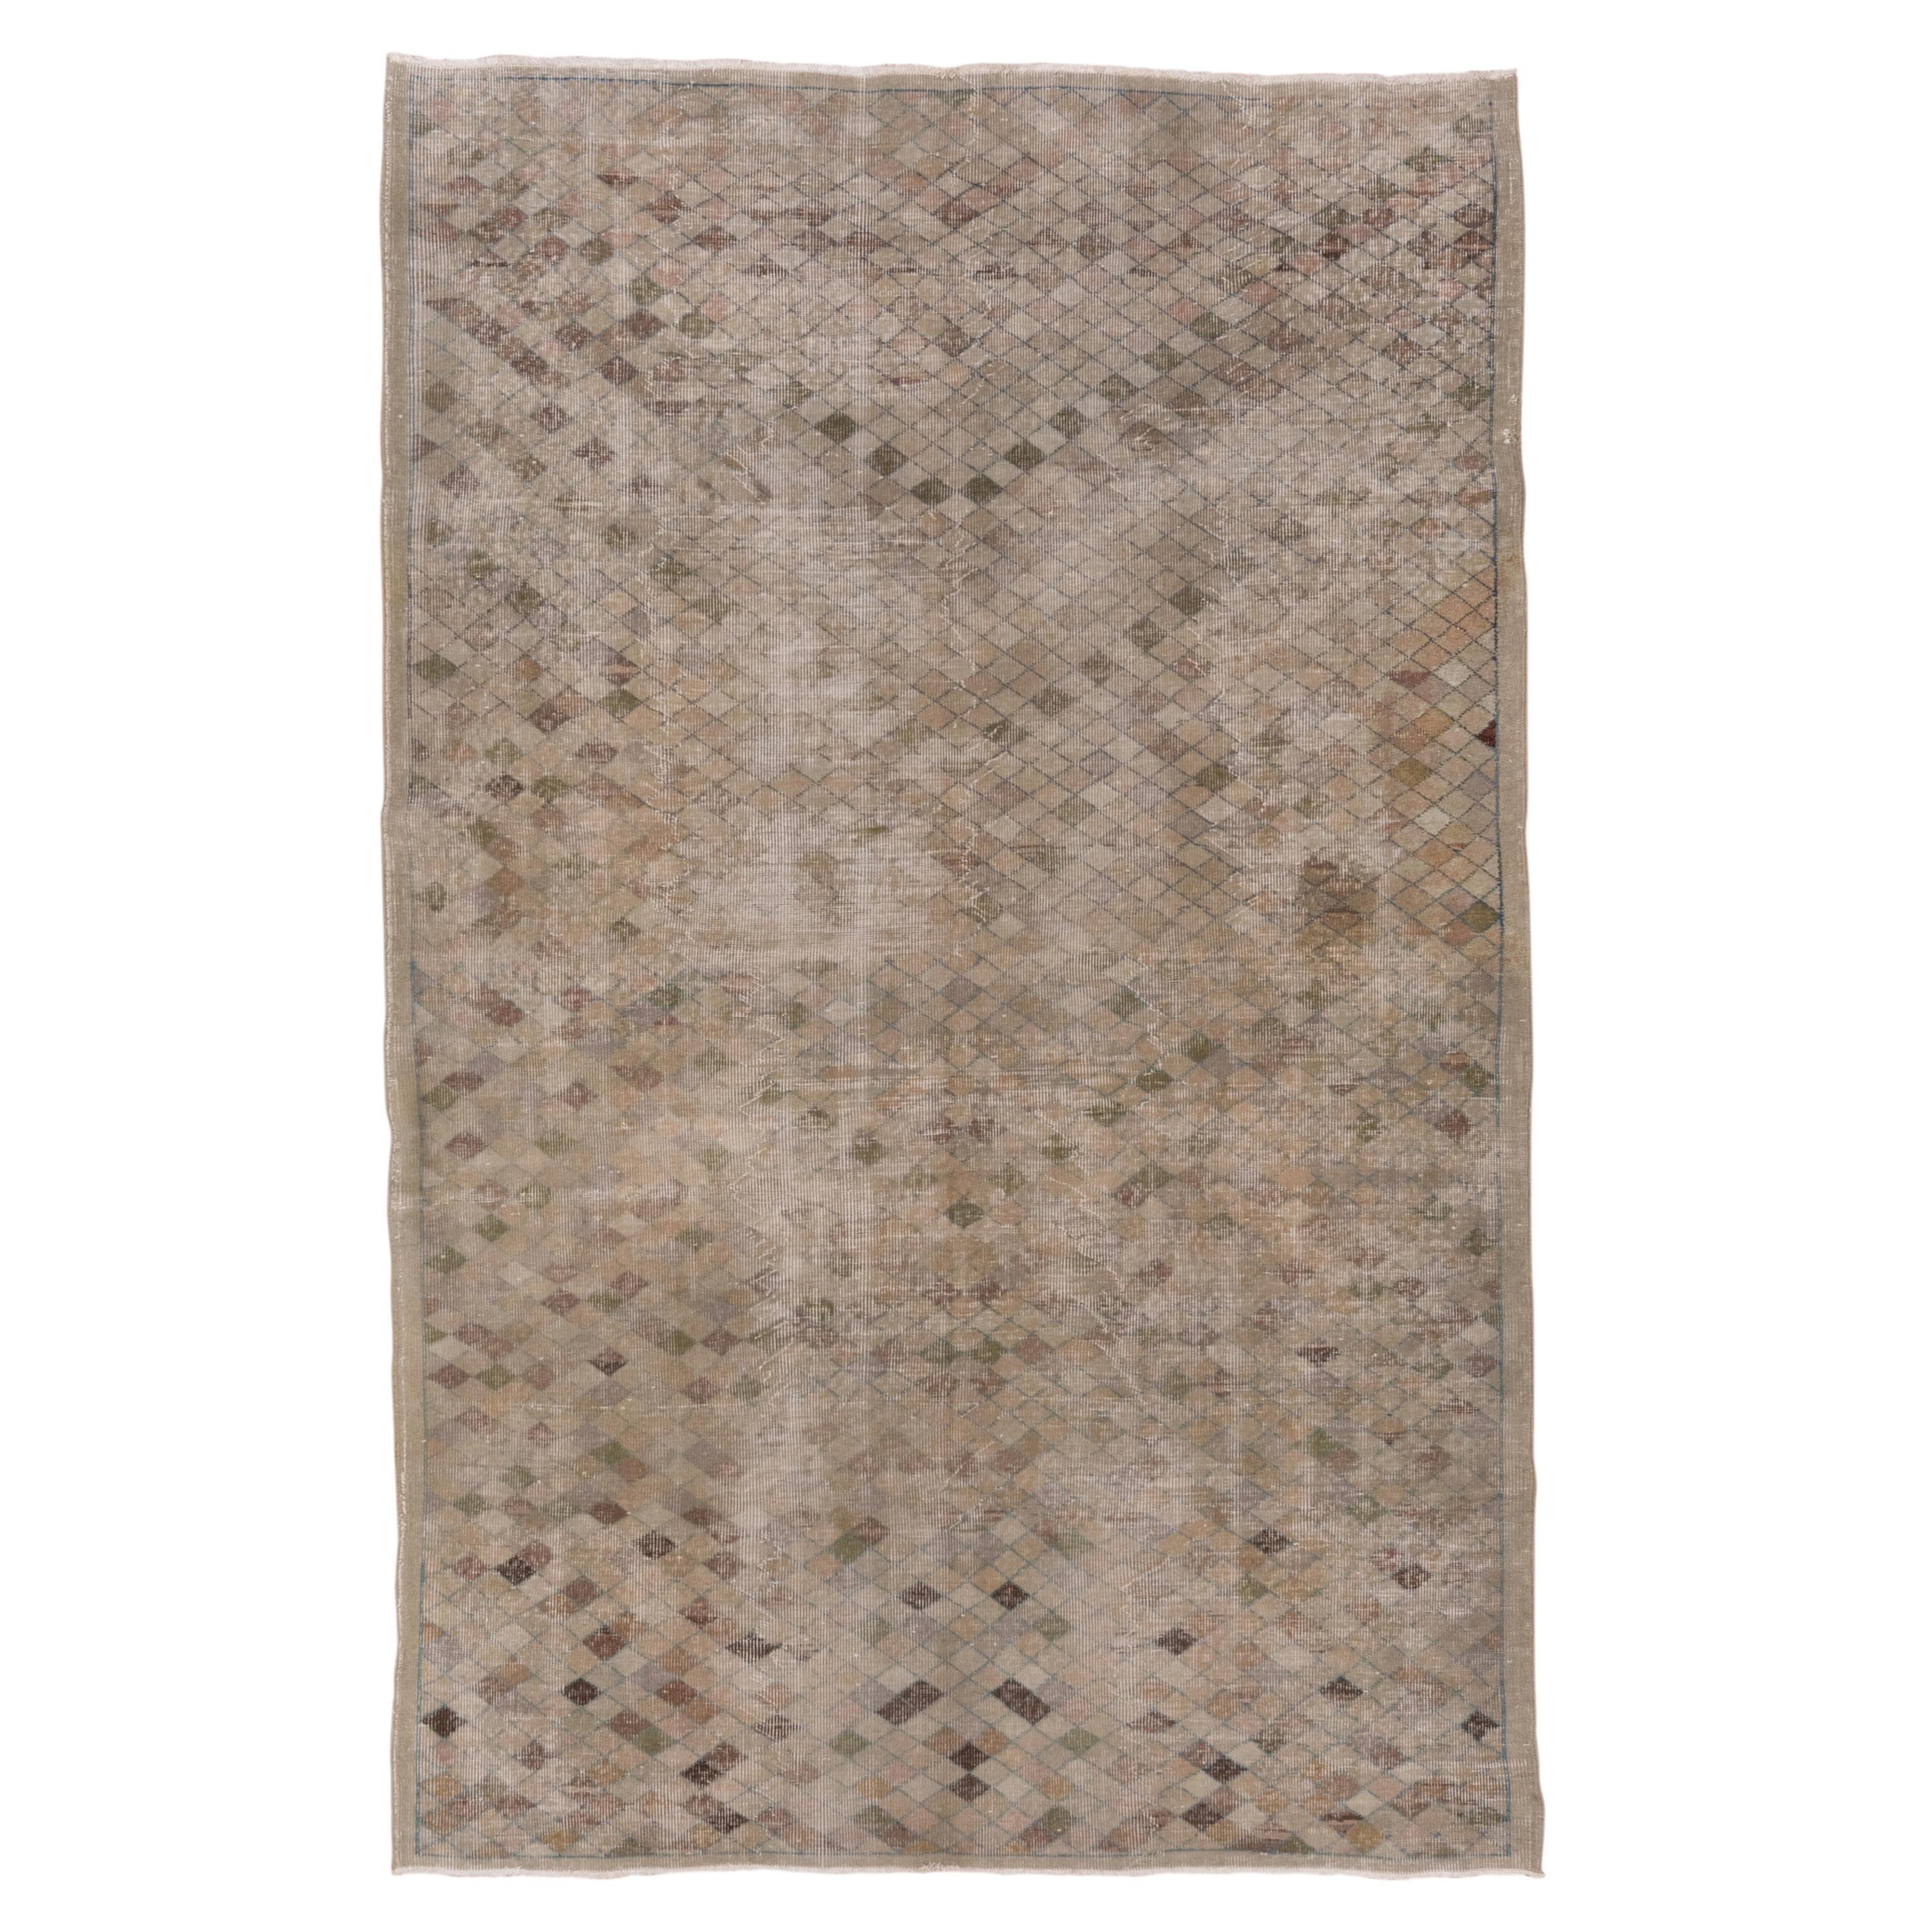 Rustic Oushak Carpet, Neutral Palette For Sale